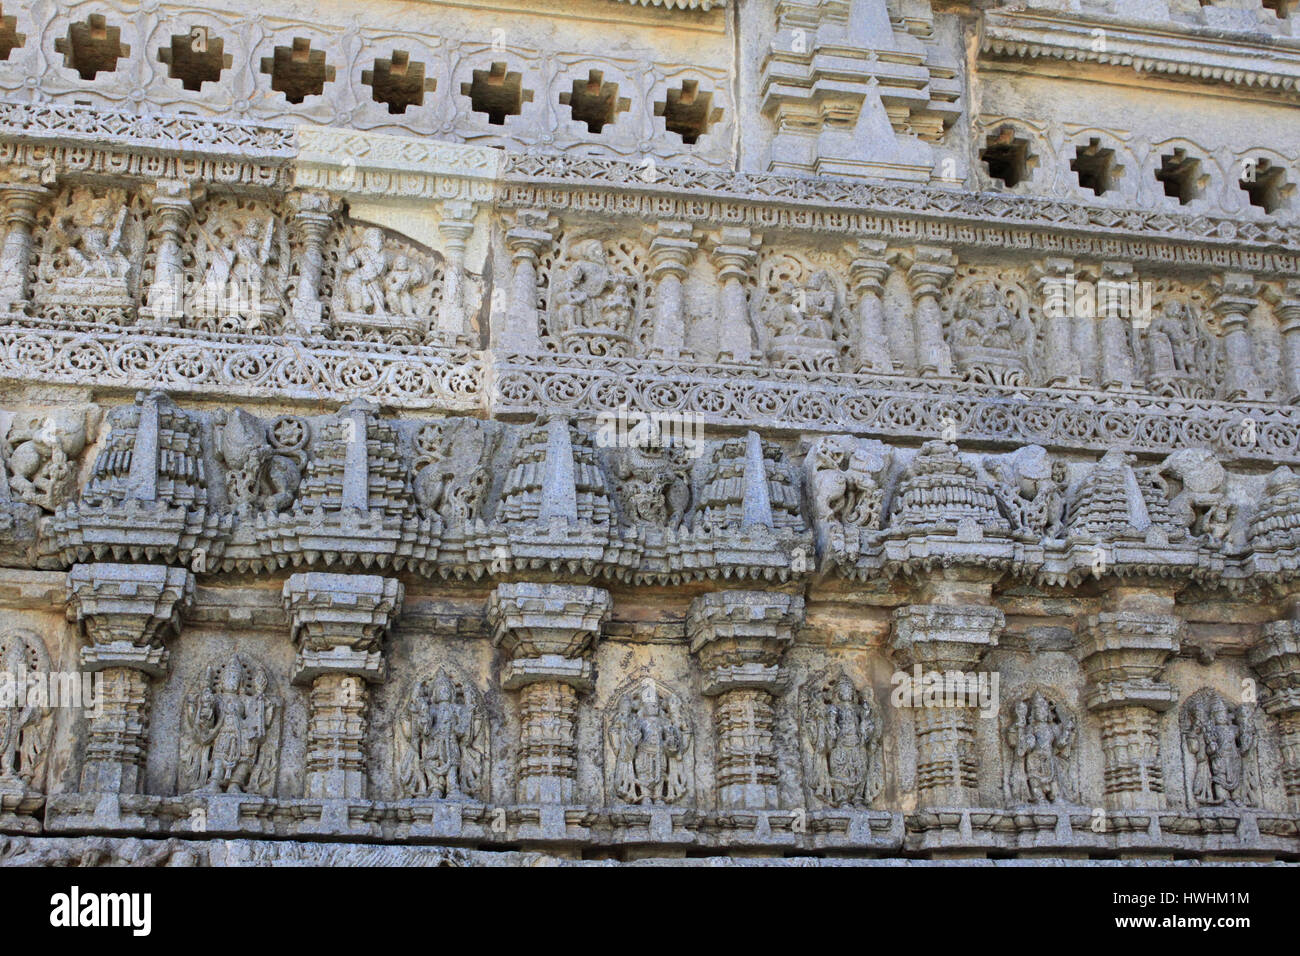 Detaillierten Steinbildhauen, Wandreliefs, Formteil Fries im Chennakesava Tempel, Hoysala Architektur, Somanathpur, Karnataka, Indien Stockfoto